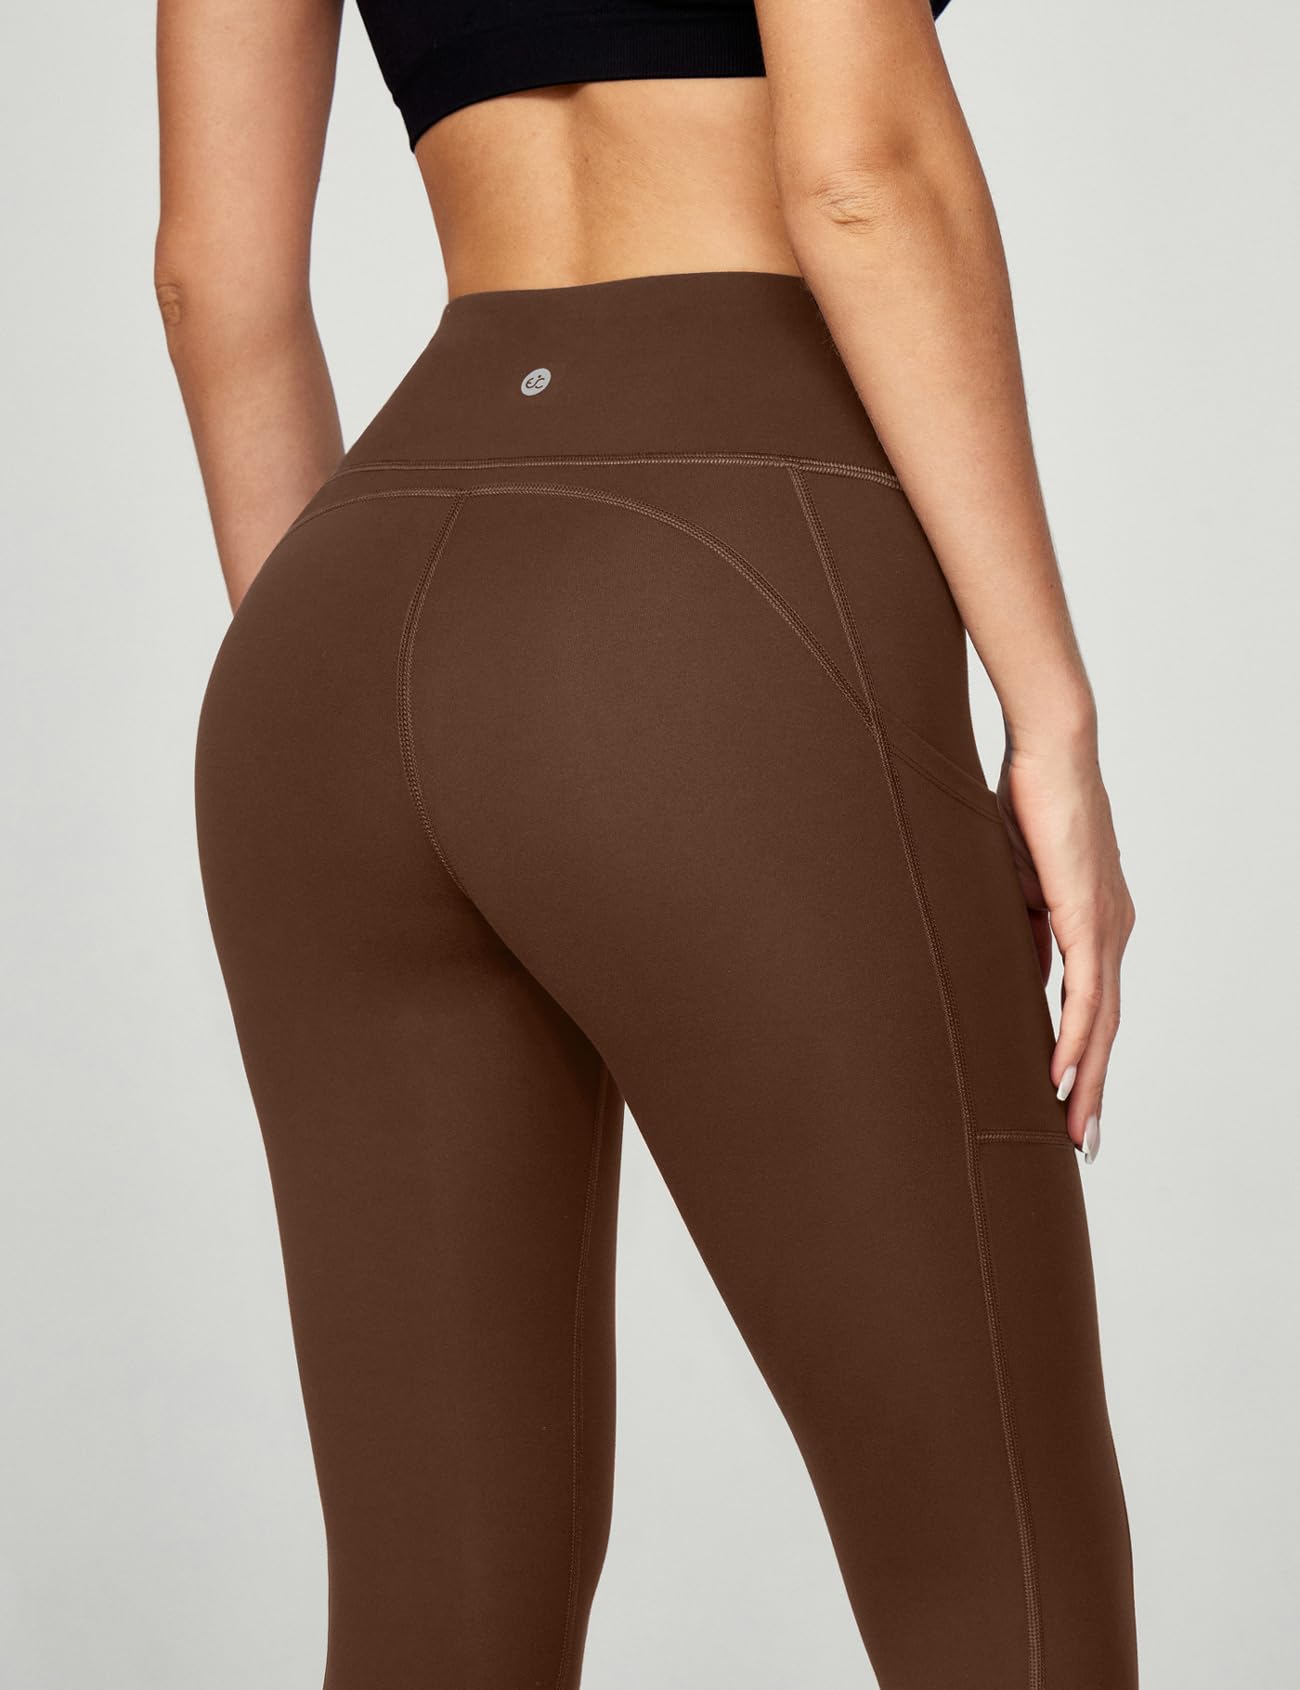 Buy Ewedoos Women's Yoga Pants with Pockets - Leggings with